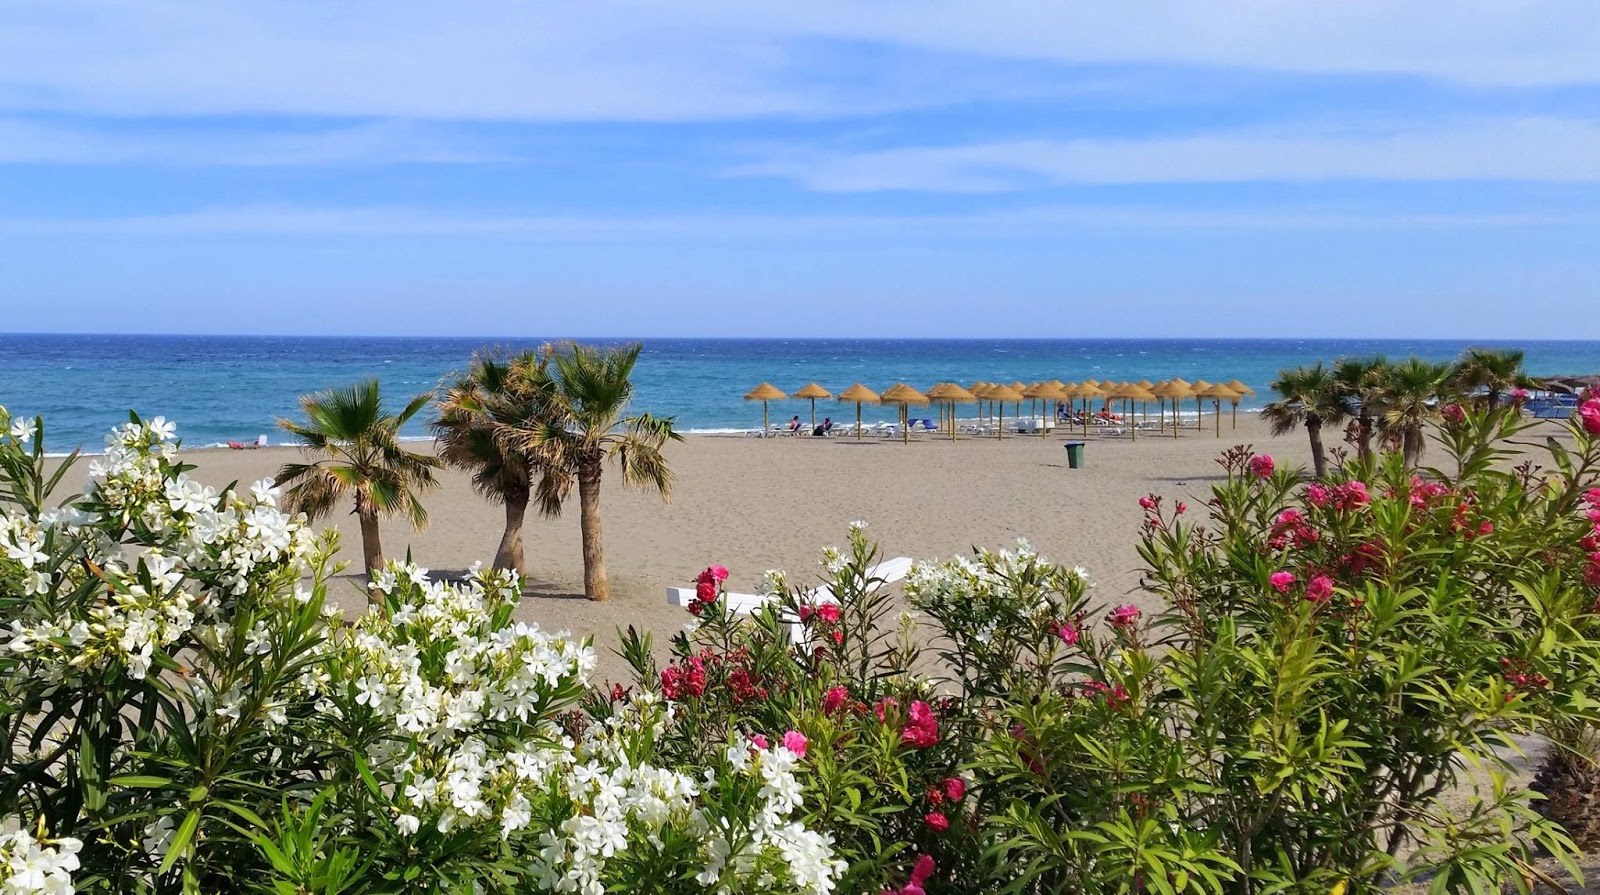 Foto af Playa de la Mena - populært sted blandt afslapningskendere